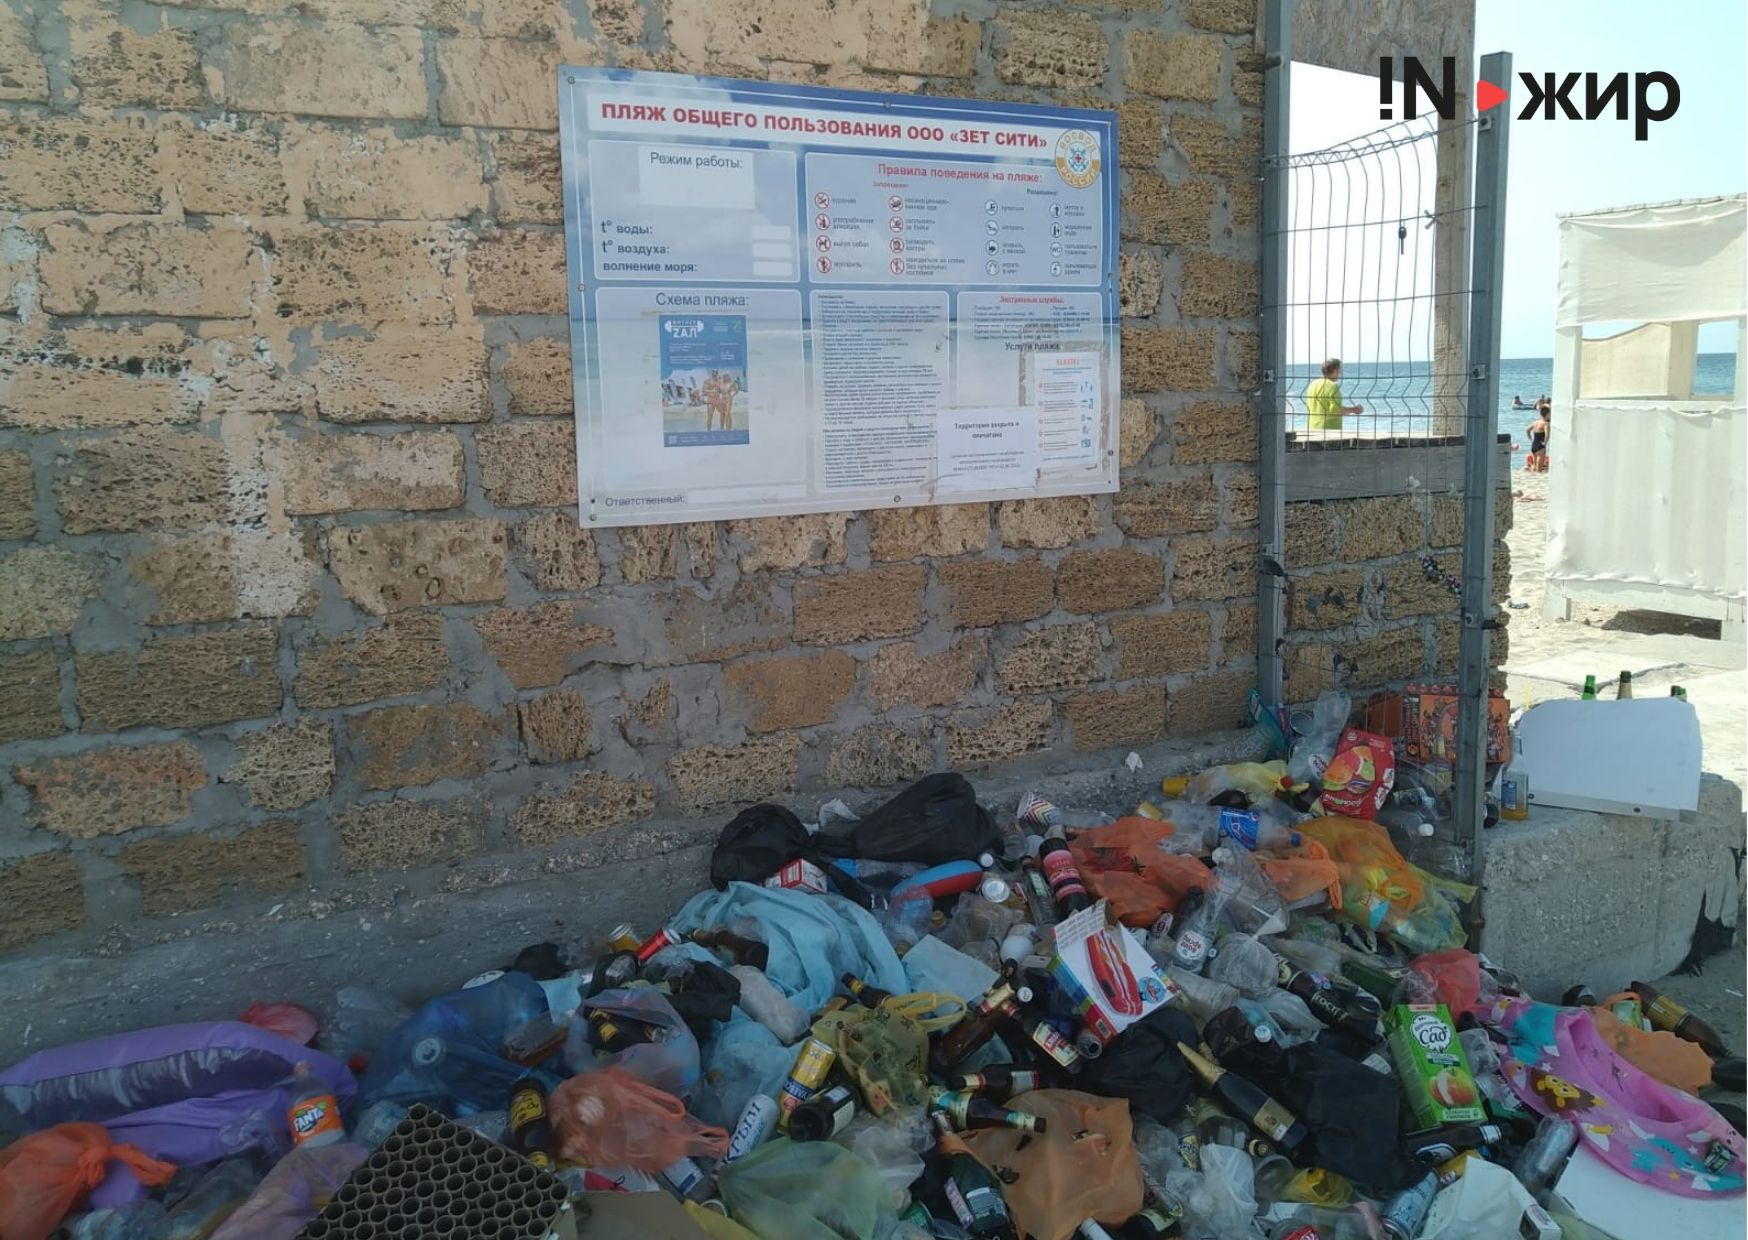 Возле забора этой территории собралась огромная куча мусора.&nbsp;Фото: INжир Media